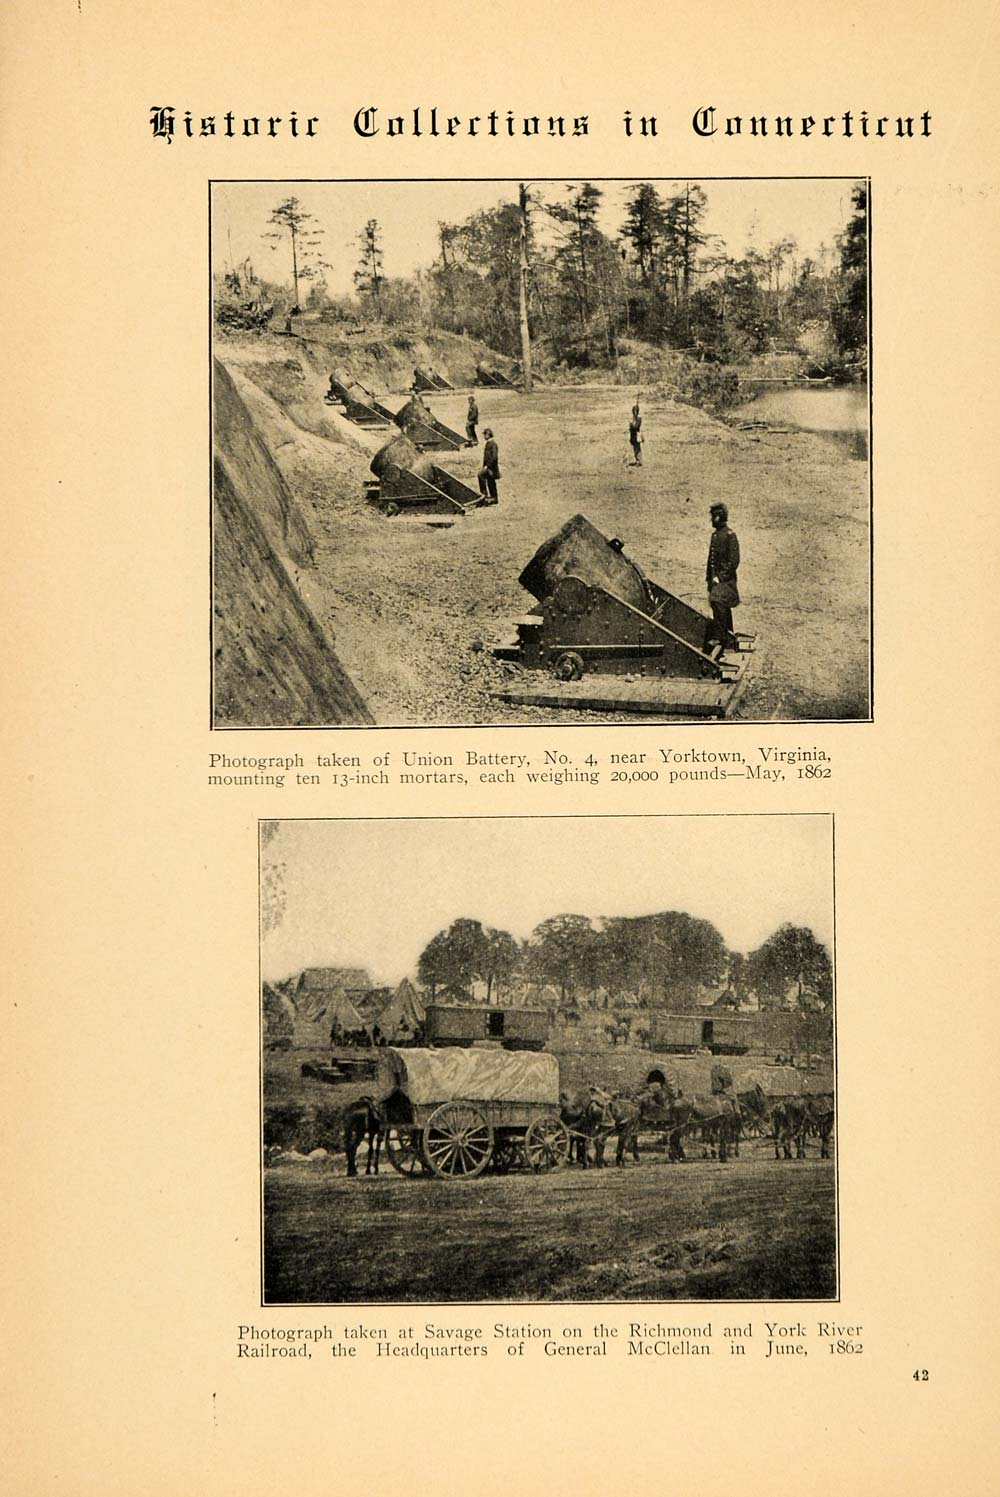 1908 Article Edward Bailey Eaton Civil War Photograph Manassas Jct Union CM1